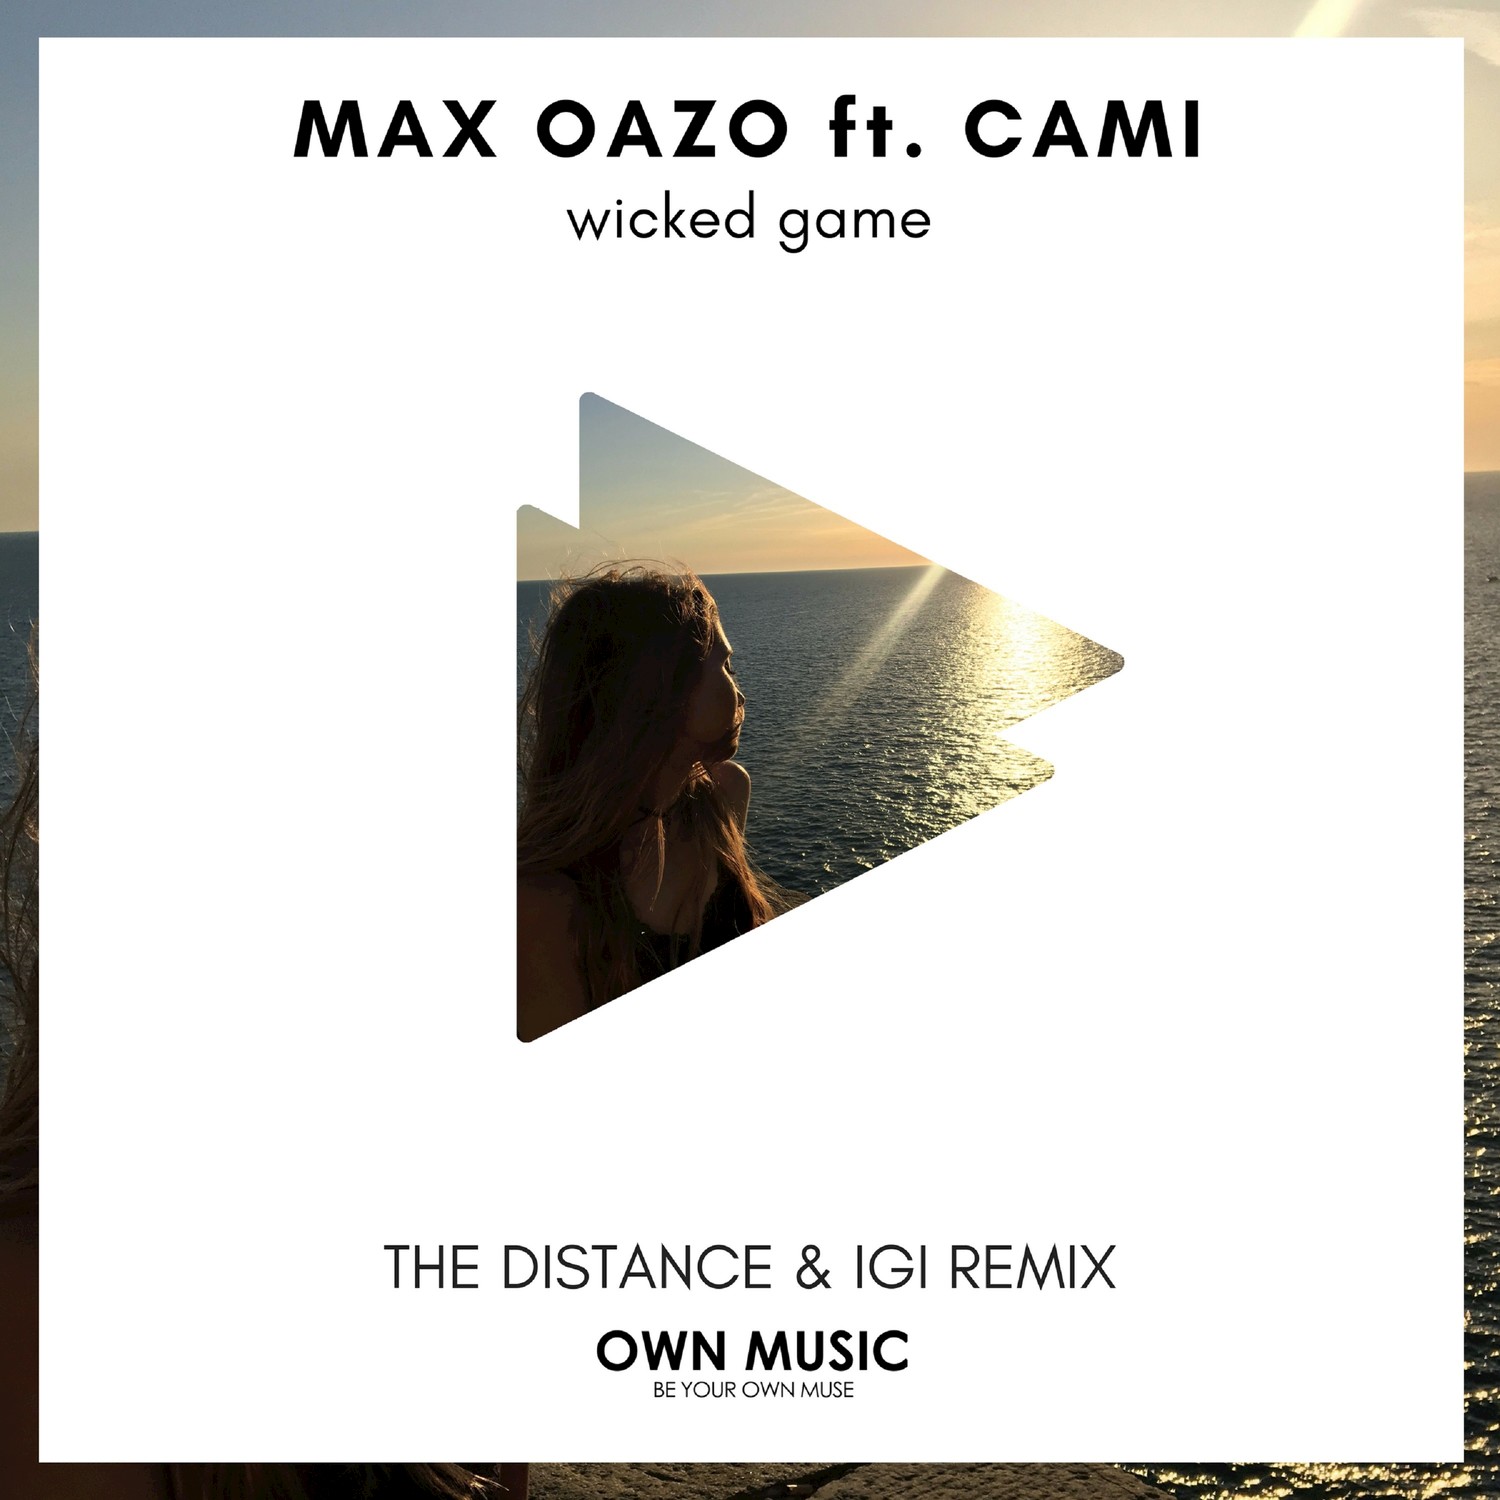 The distance remix. Max Oazo. Max Oazo Camishe. Cami & Max Oazo. Max Oazo солистка.